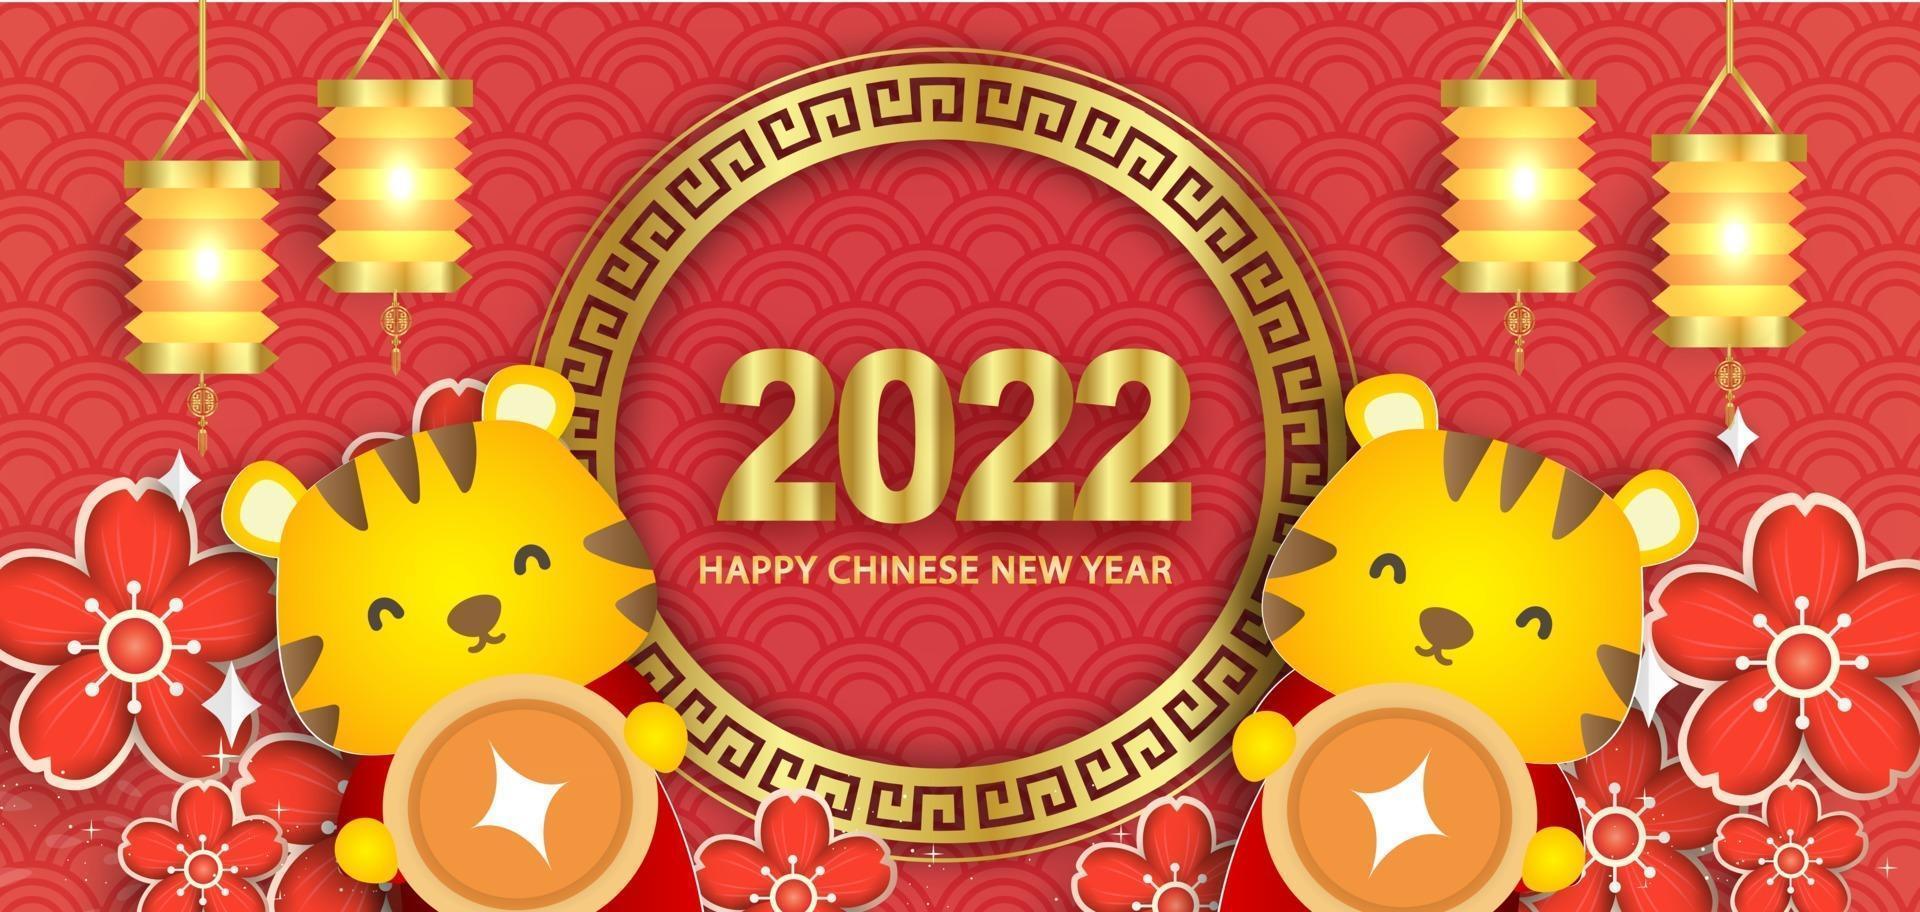 año nuevo chino 2022 año del estandarte del tigre. vector